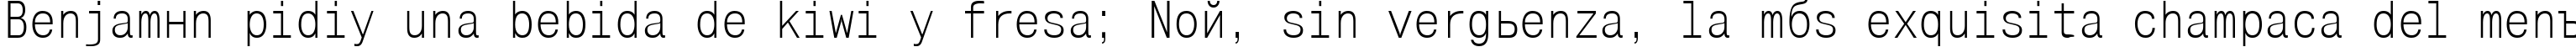 Пример написания шрифтом Mono Condensed текста на испанском